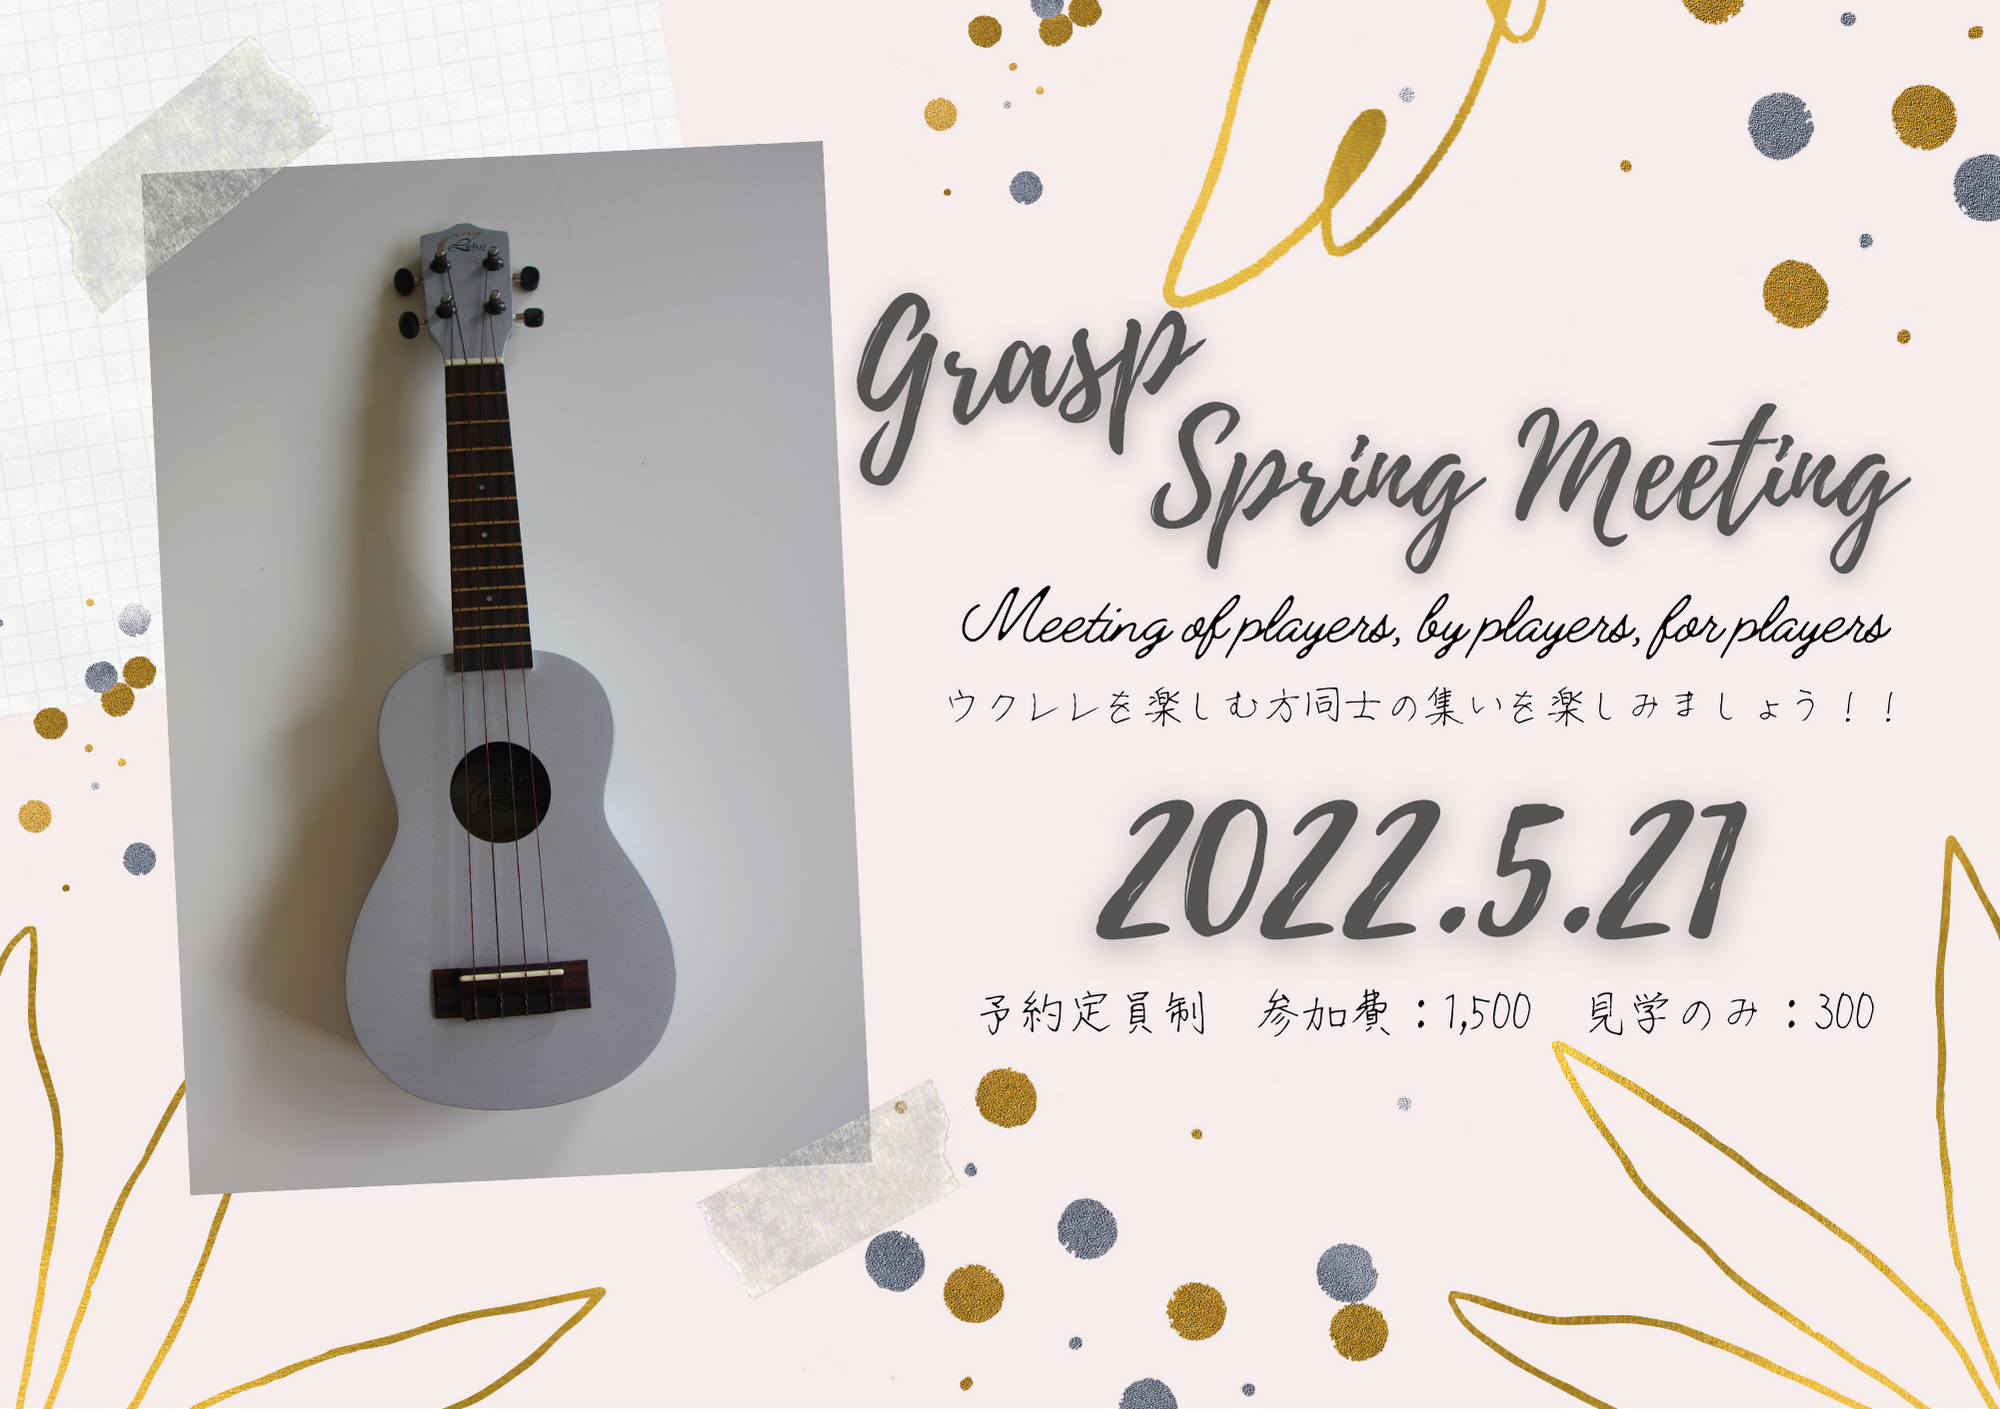 【会員様向けイベント】Grasp Spring Meetingを開催いたします